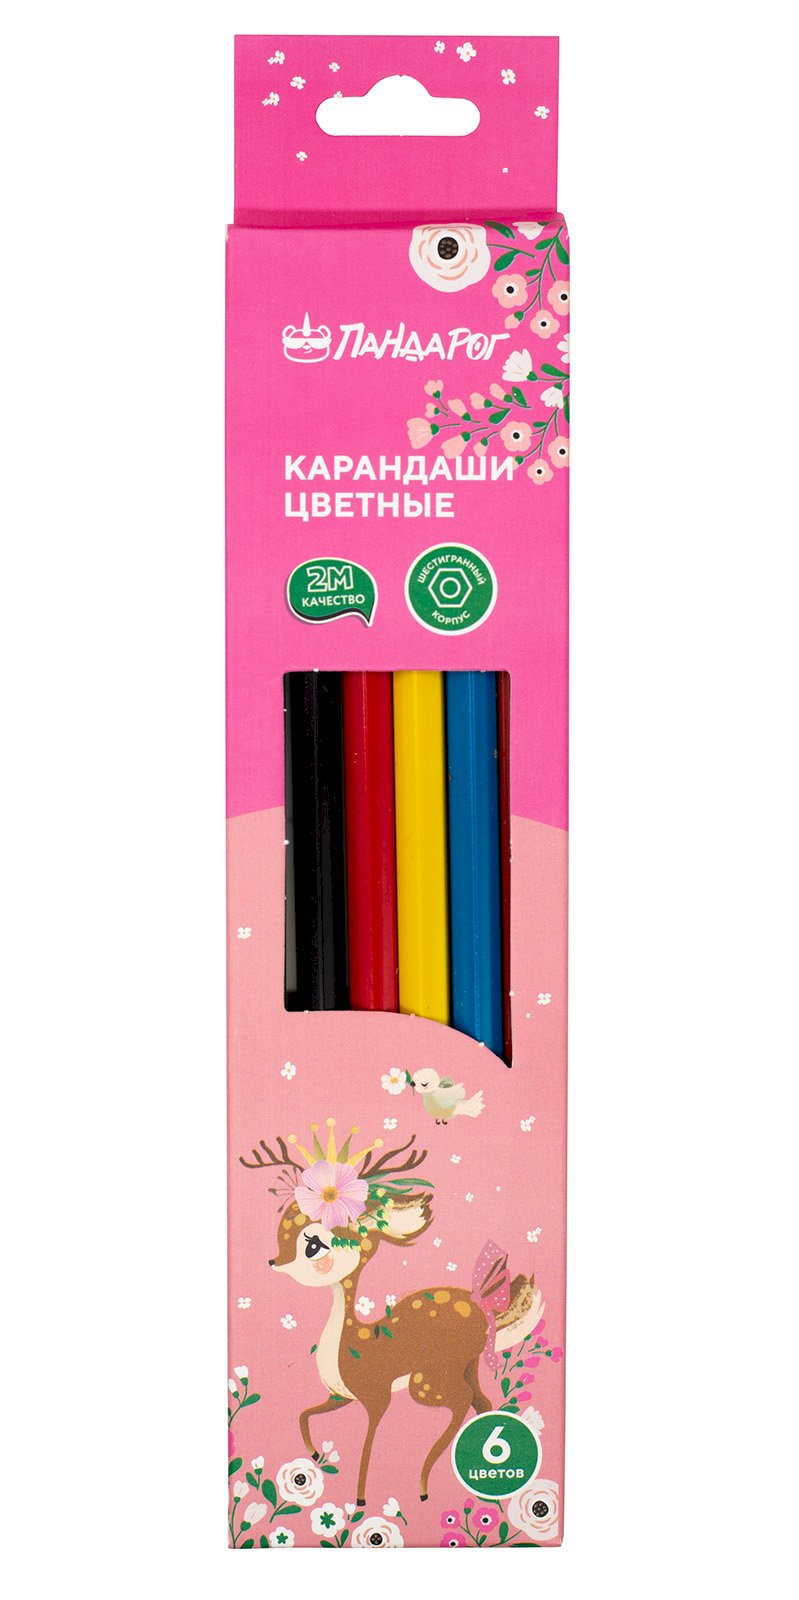 Карандаши цветные ПандаРог Олененок, 6 цветов, пластиковые, шестигранные